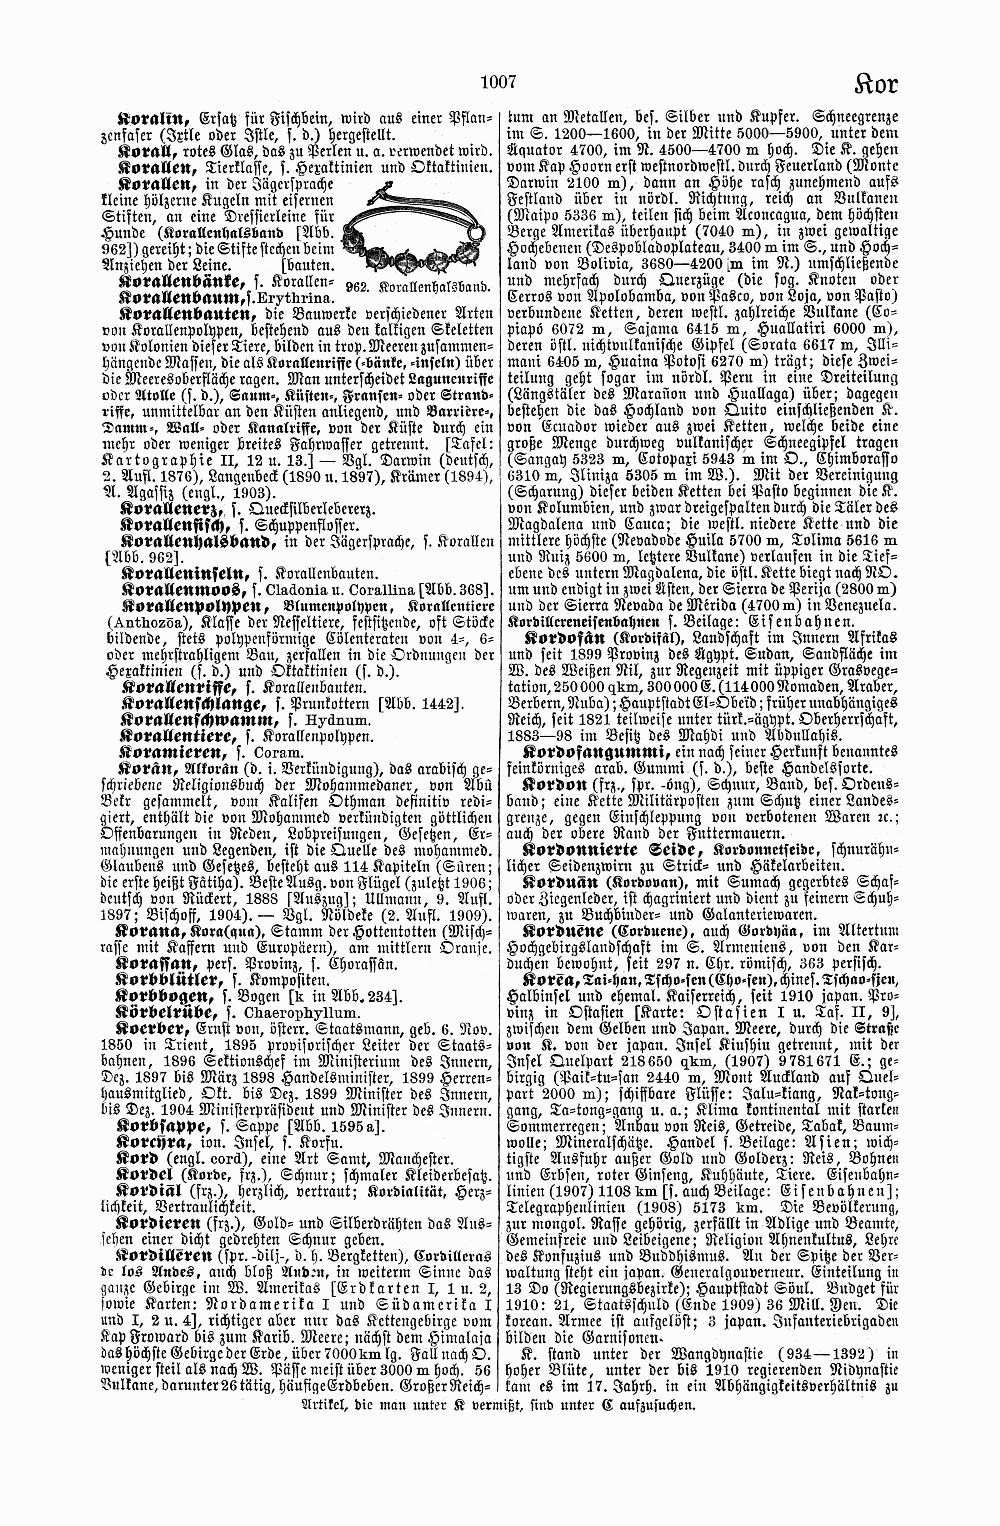 Brockhaus' Kleines Konversations-Lexikon, fünfte Auflage, Band 1. Leipzig 1911. S. 1007